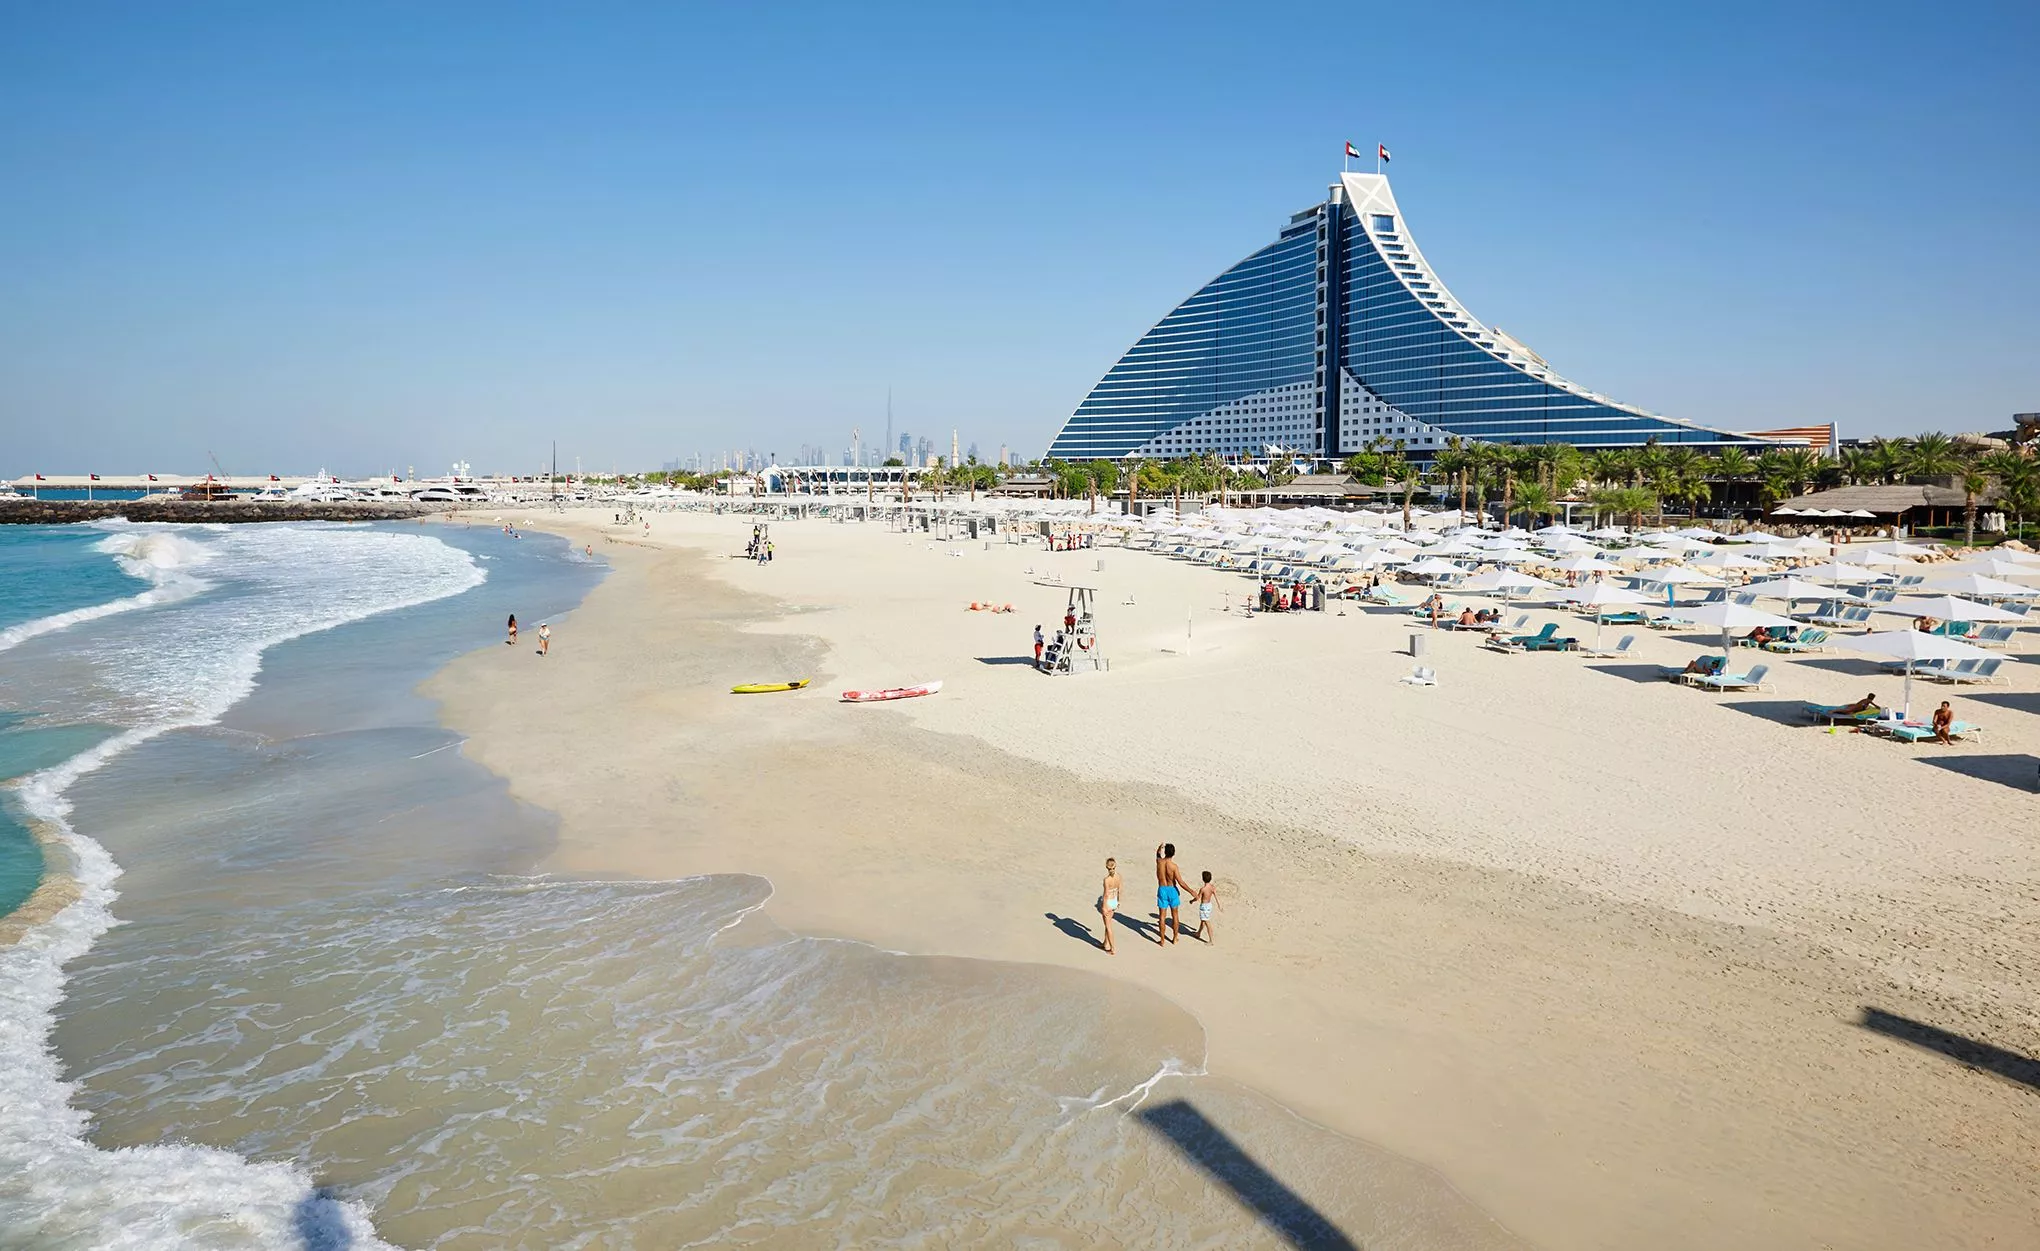 Wie eine Welle thront das Jumeirah Beach Hotel am gleichnamigen Strand